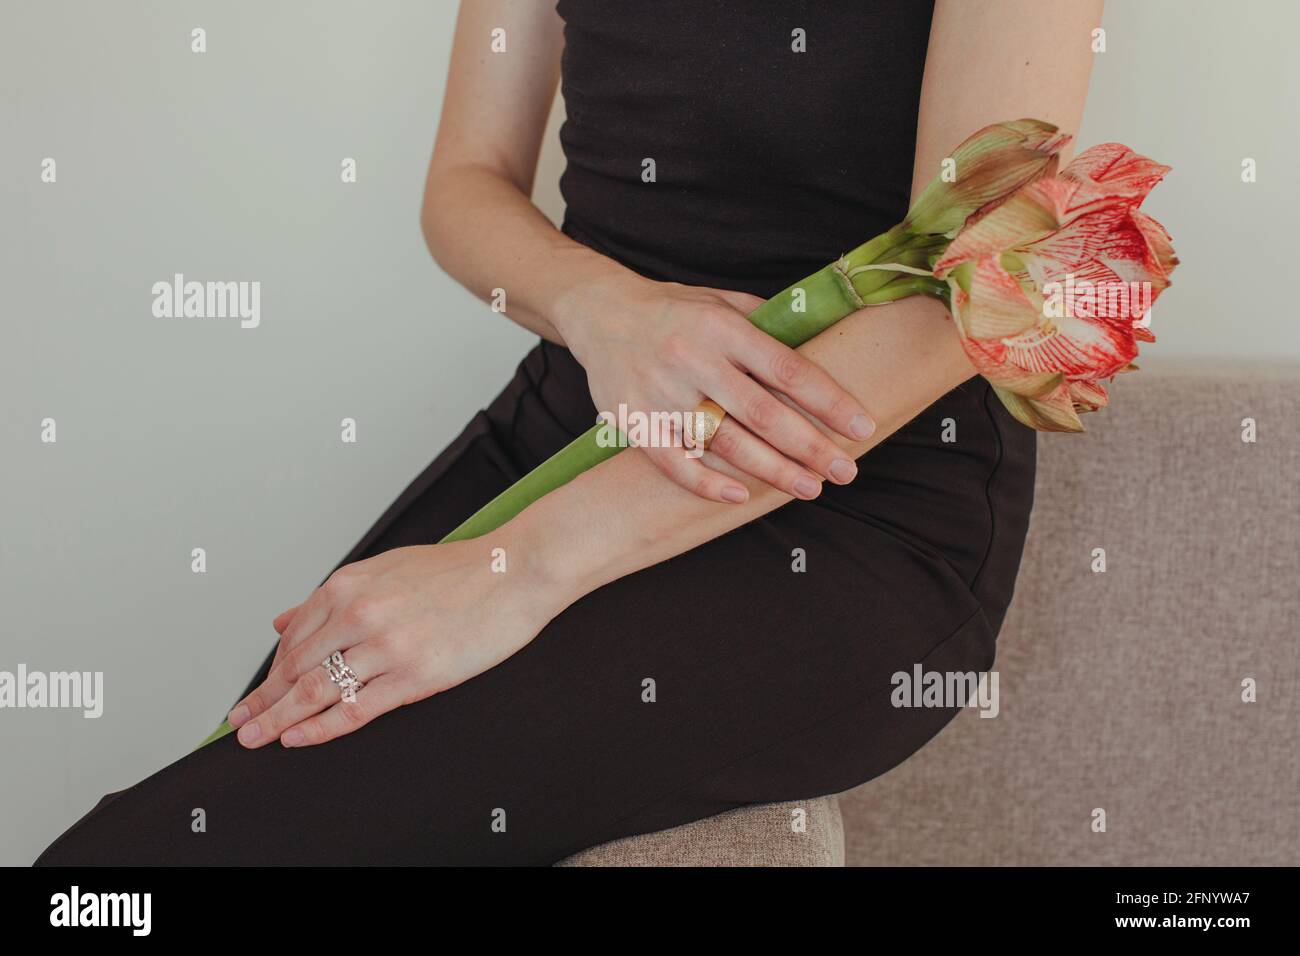 Primer plano de una mujer en una bata de noche sentada Un sofá con una flor de Amaryllis Foto de stock